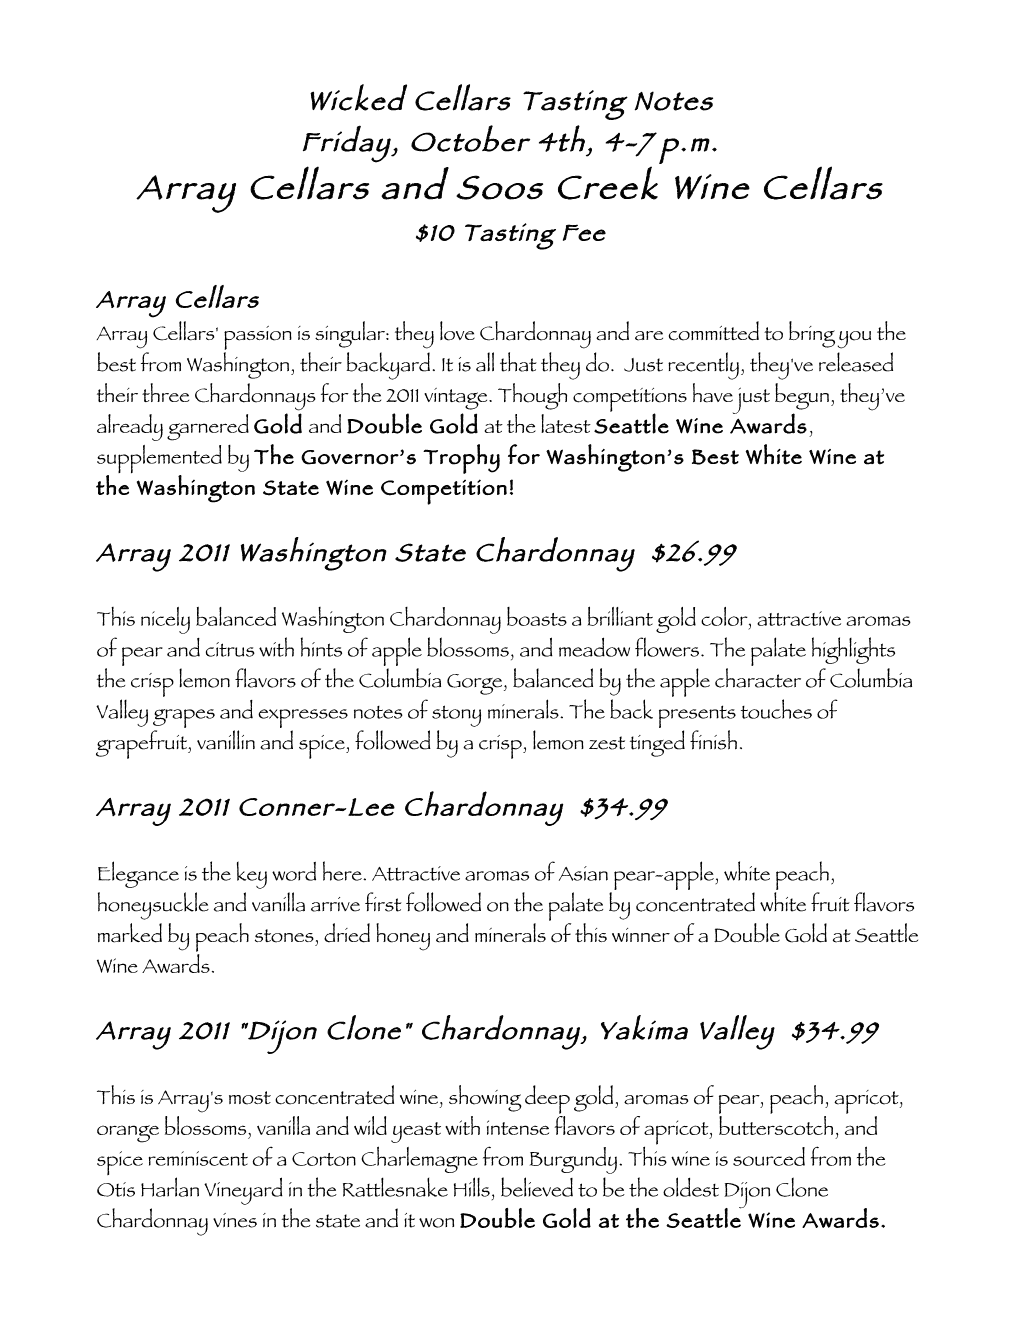 Array Cellars and Soos Creek Wine Cellars $10 Tasting Fee